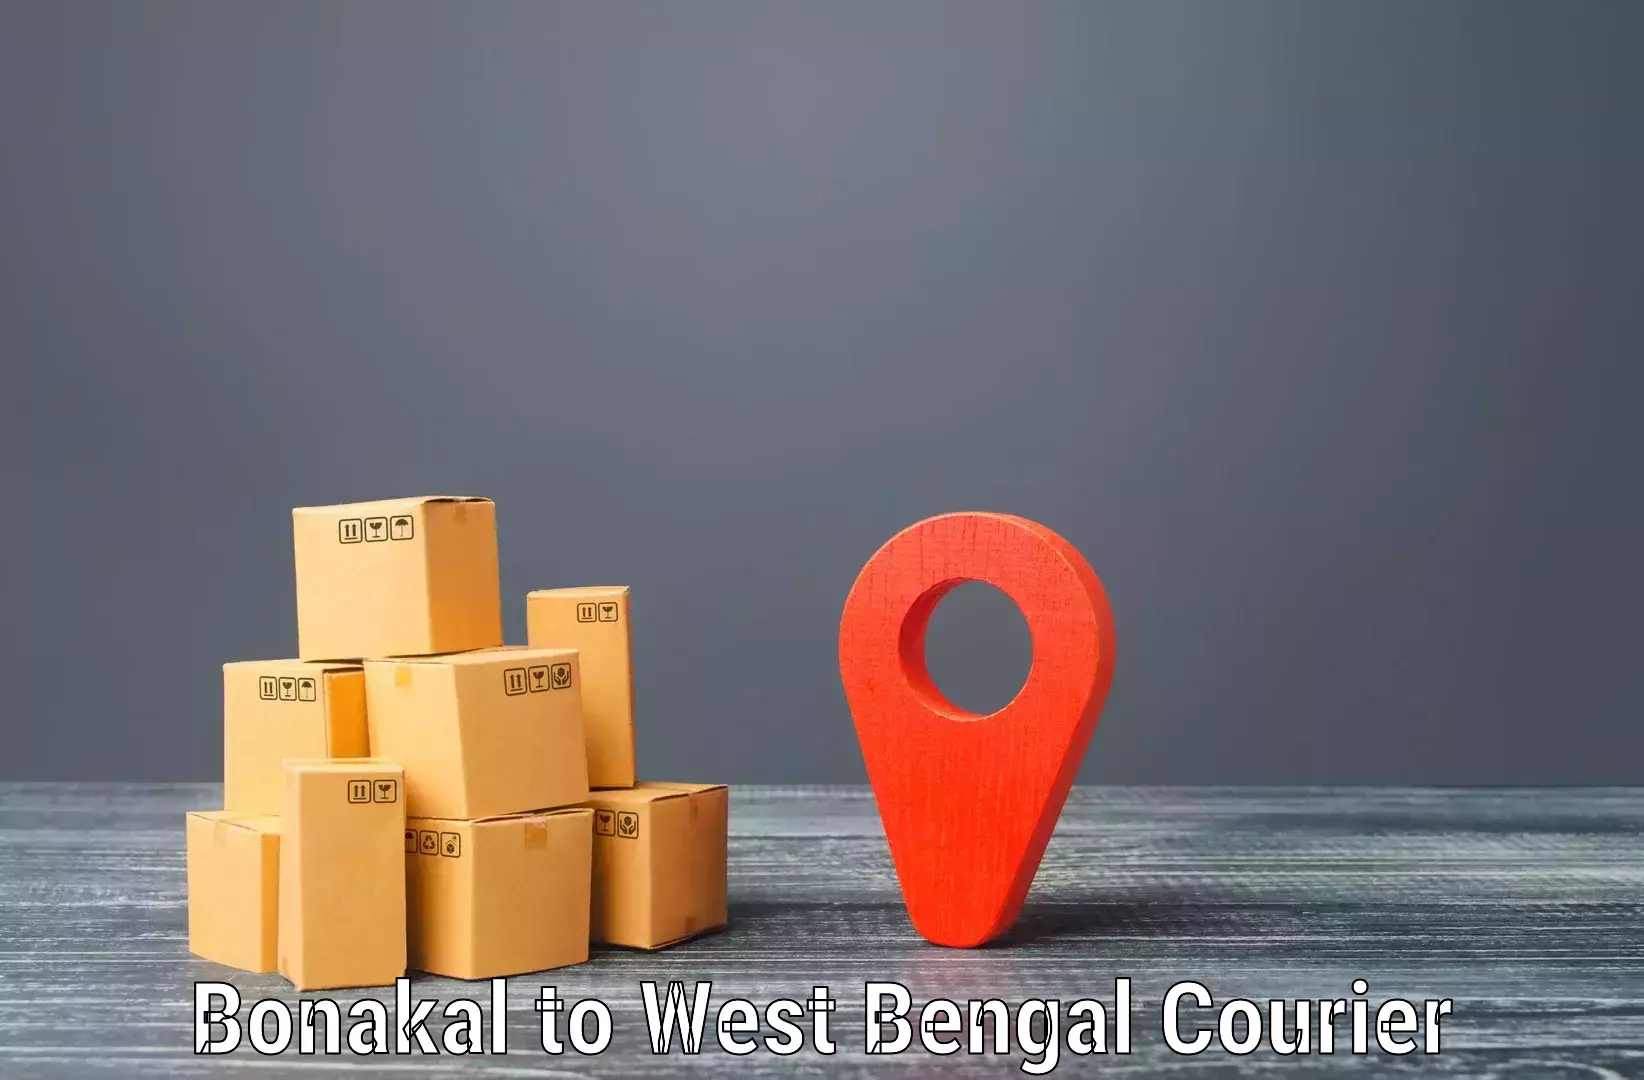 Personalized courier experiences Bonakal to Maheshtala